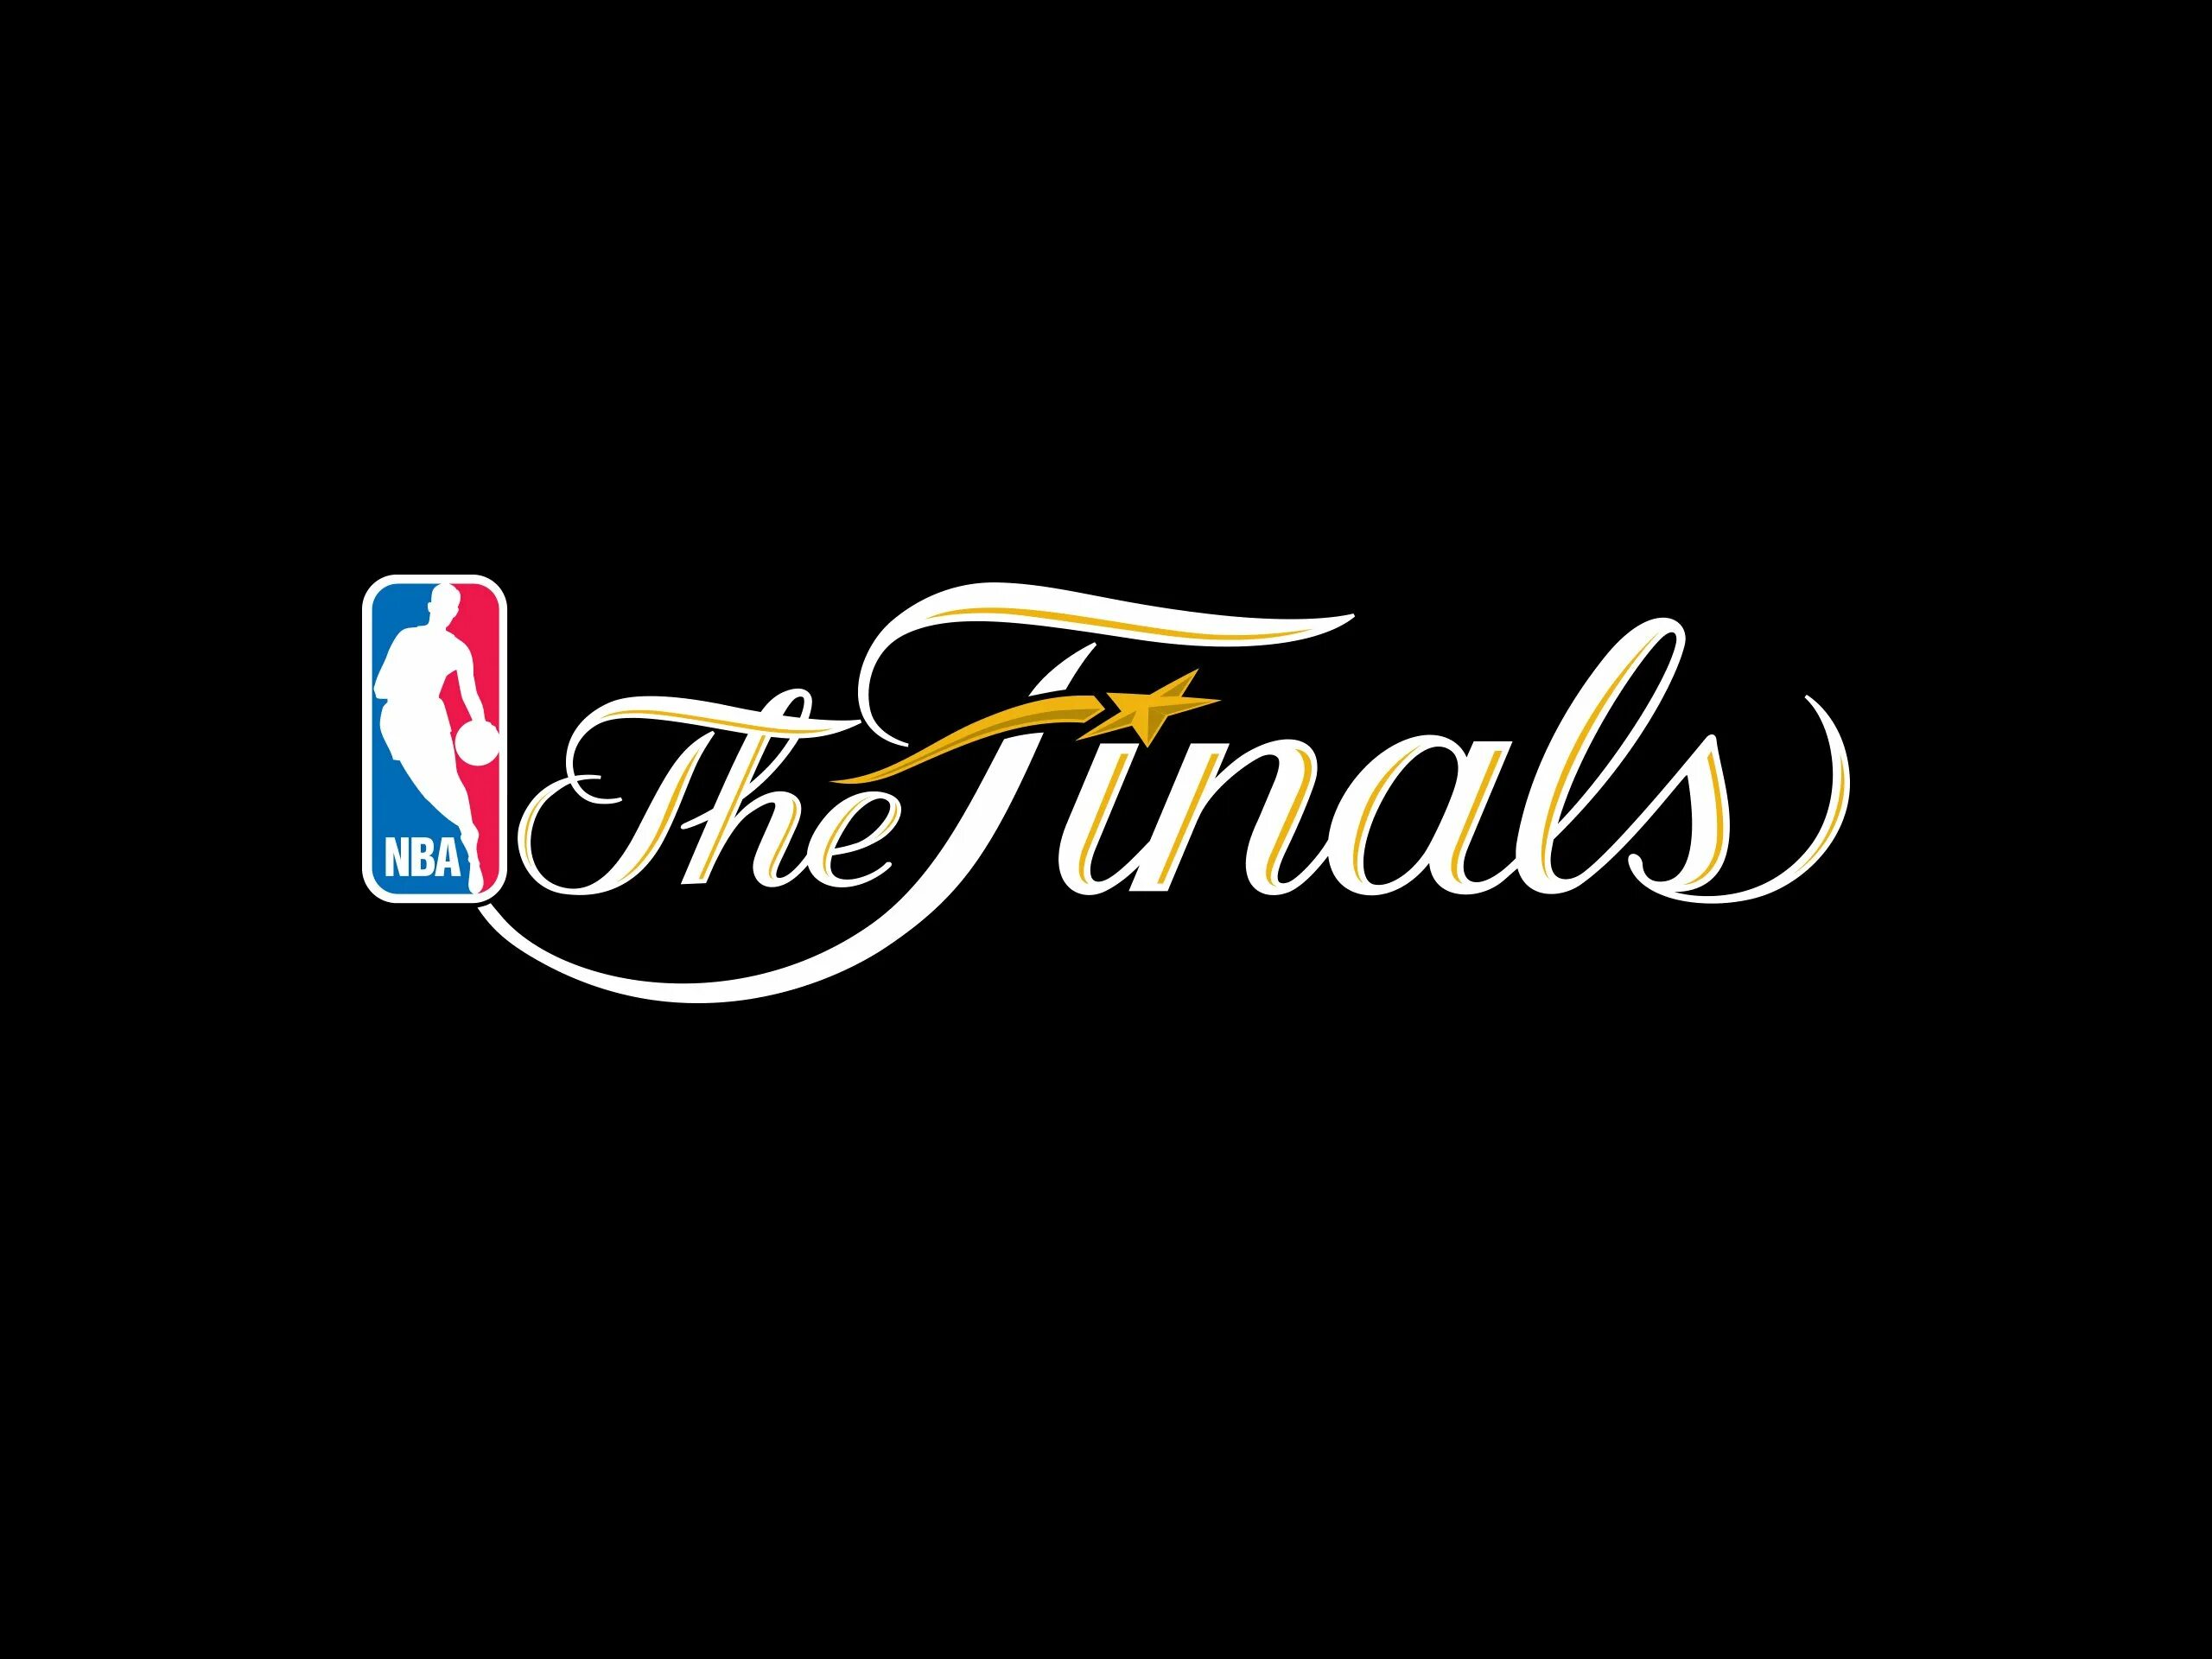 Finals 2015. NBA логотип. NBA Finals. The Finals лого. Еру аштфды лого.